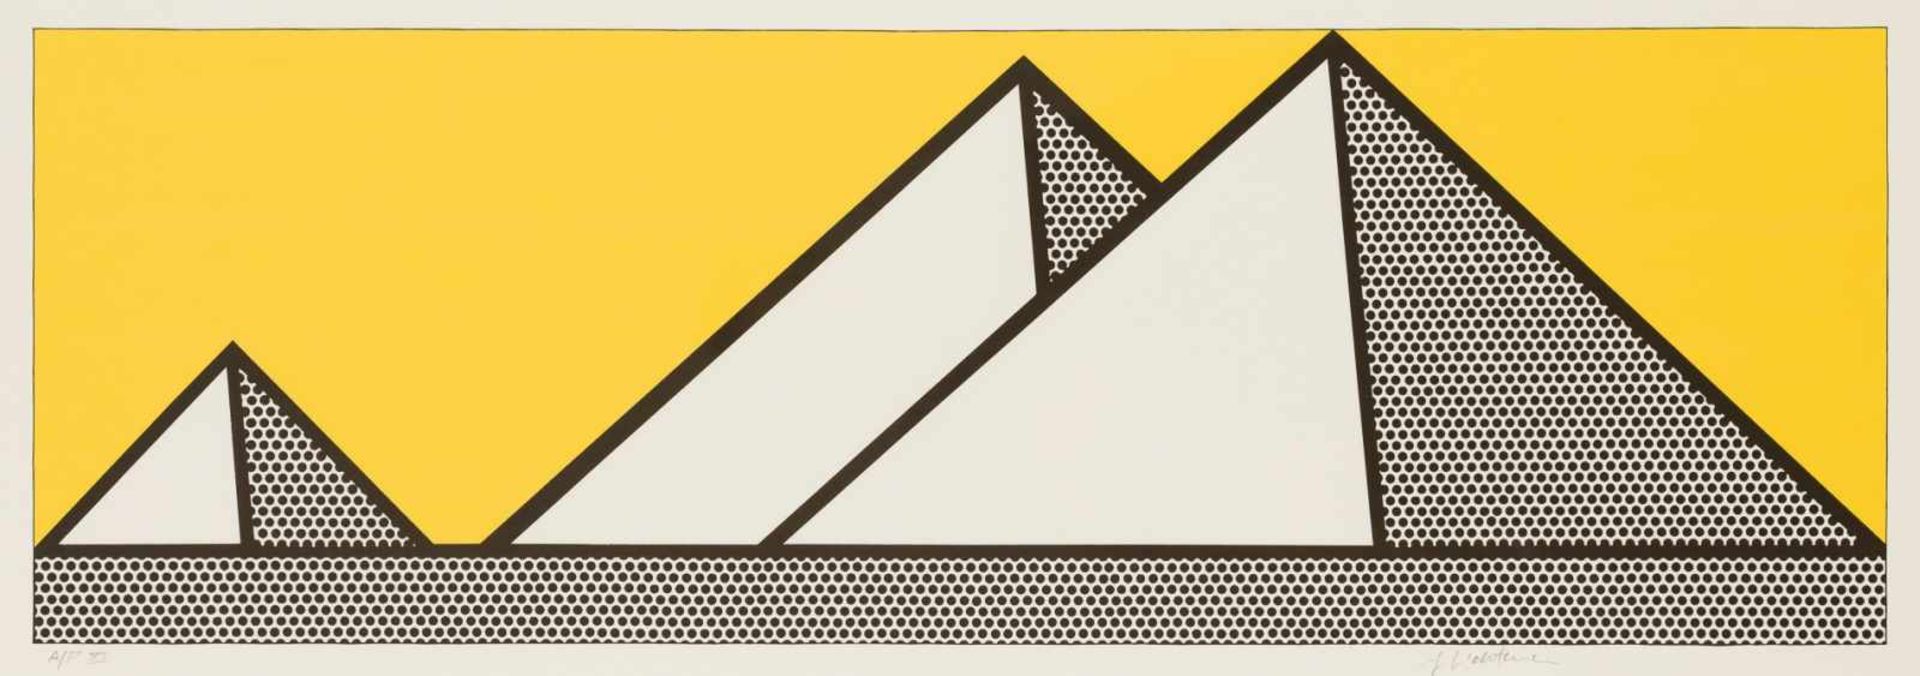 Roy Lichtenstein Manhattan 1923 - 1997 Manhattan Pyramides Siebdruck auf Papier 41,5 x 98,5 cm